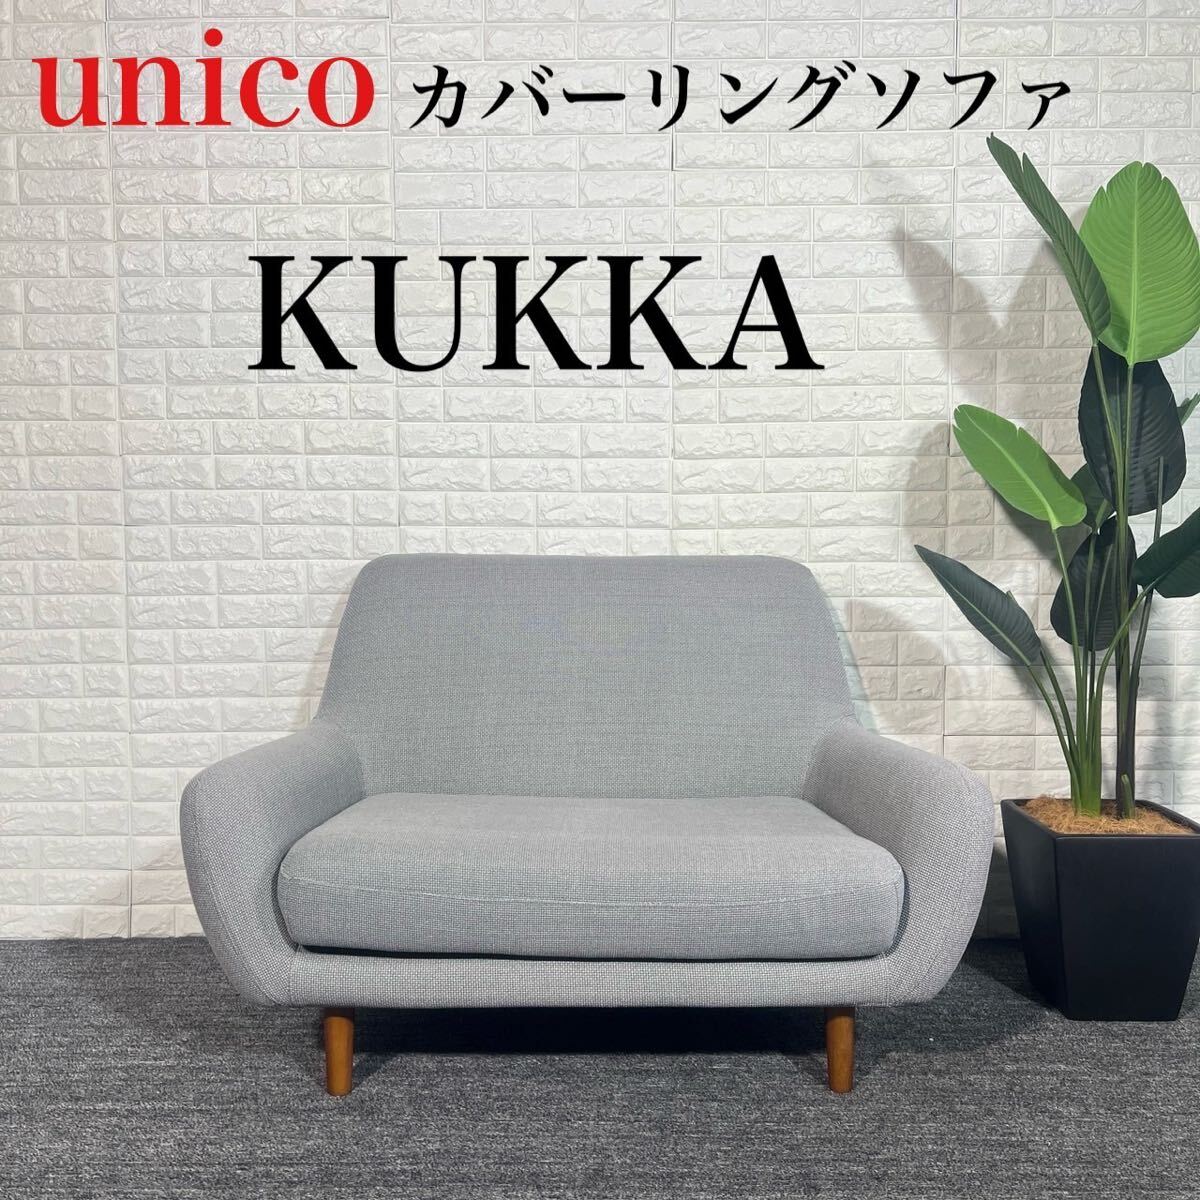 unico ウニコ カバーリングソファ KUKKA 2人掛け 北欧風 C119